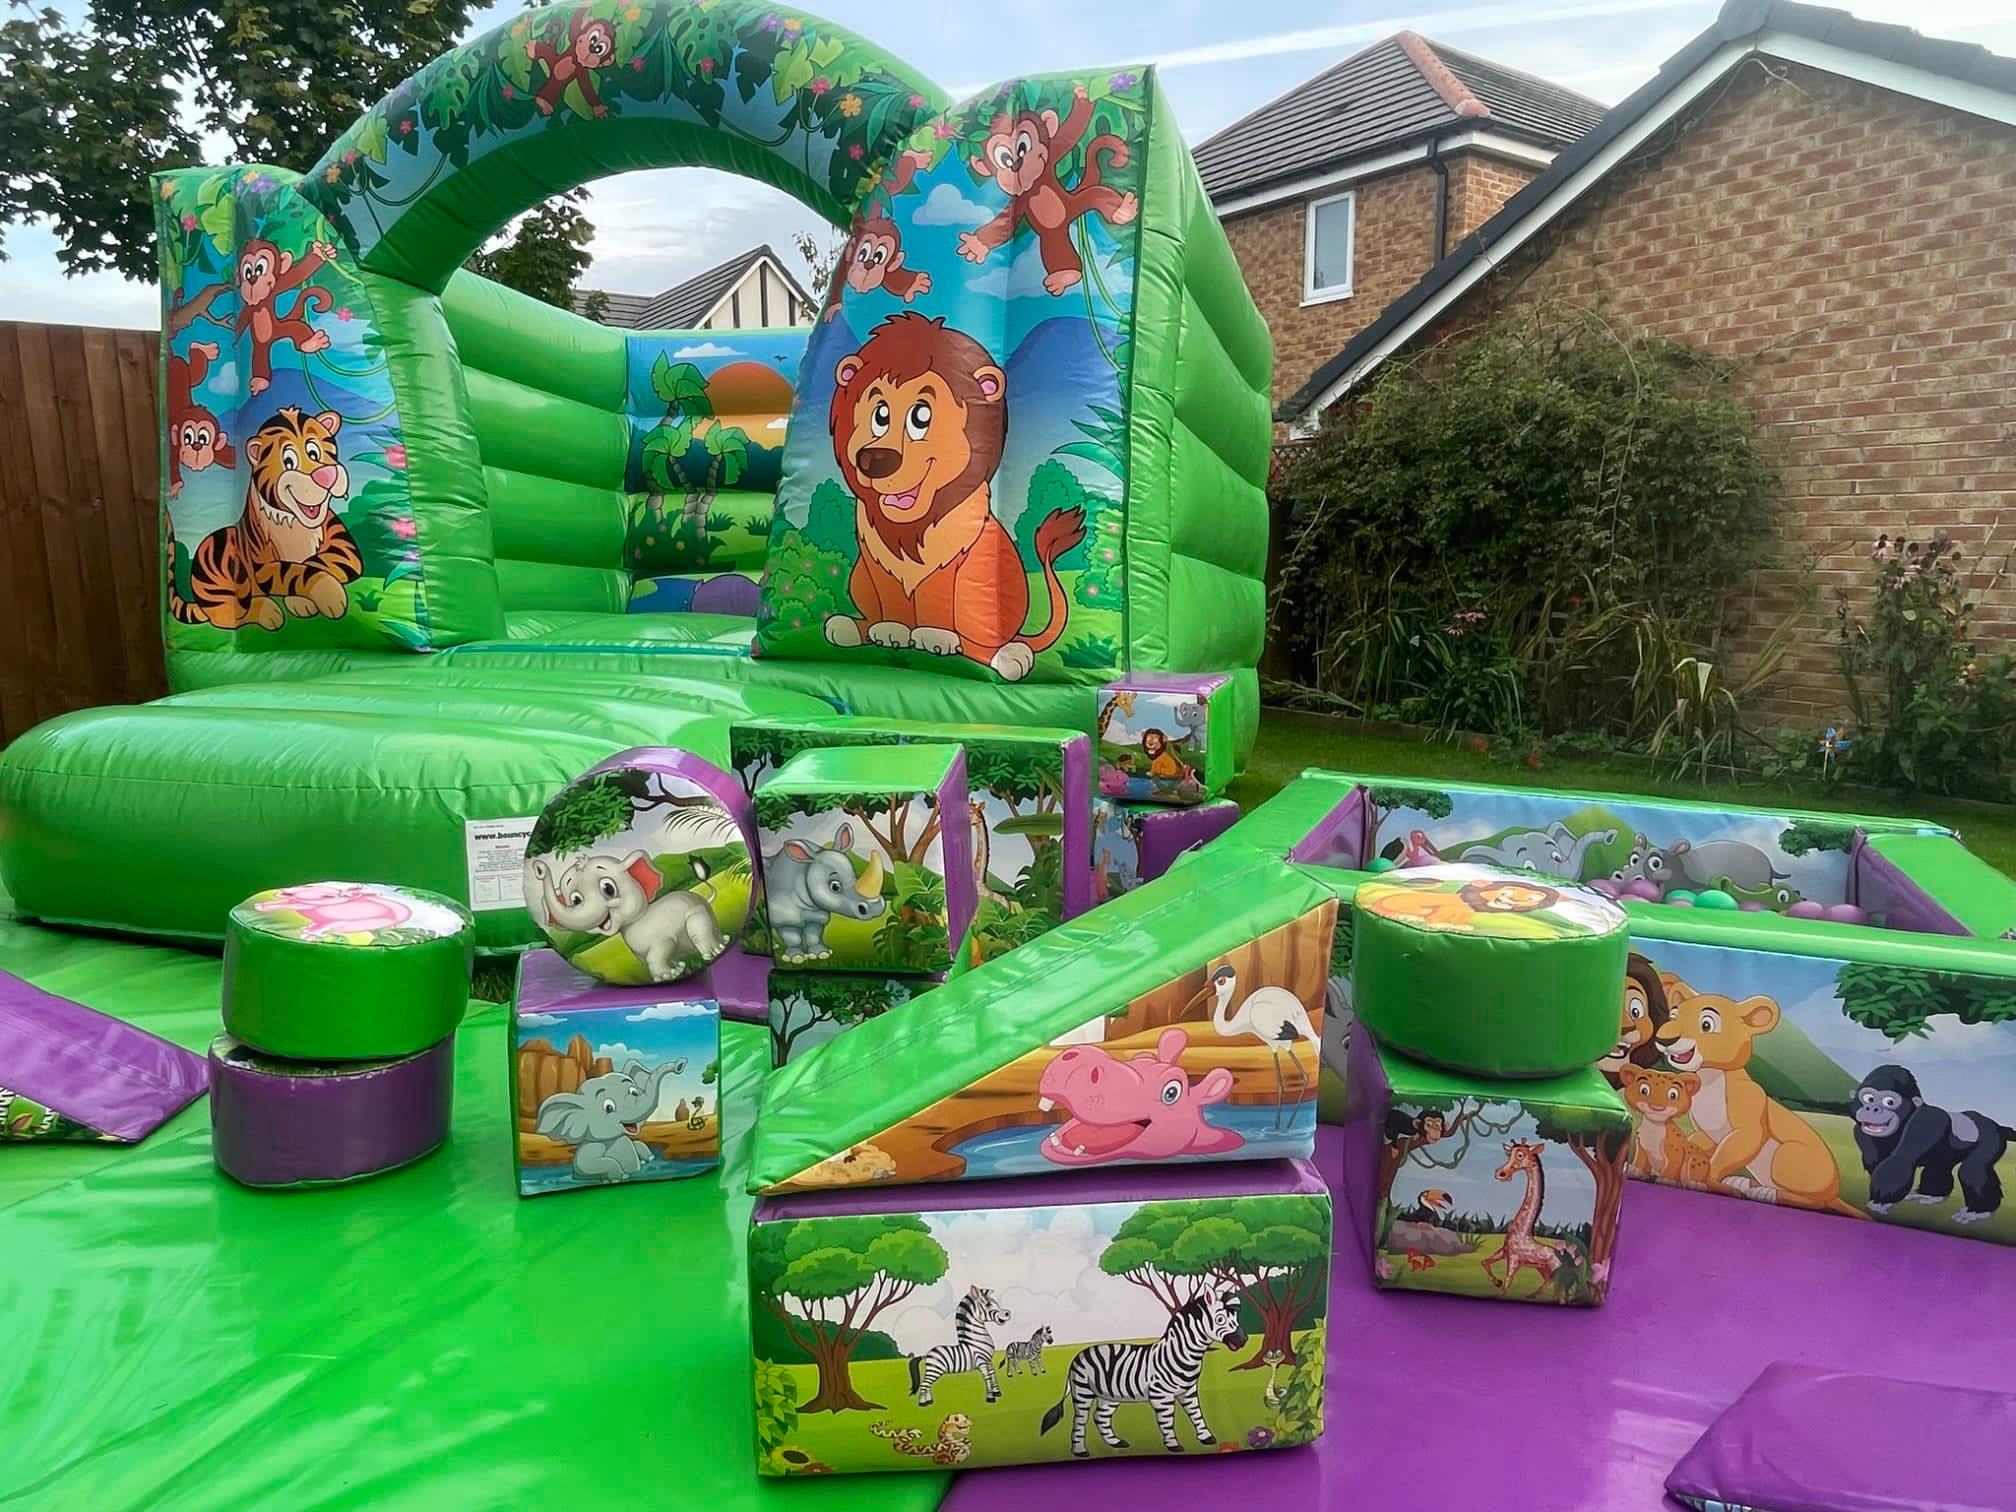 Images Fun Bouncy Castle Hire